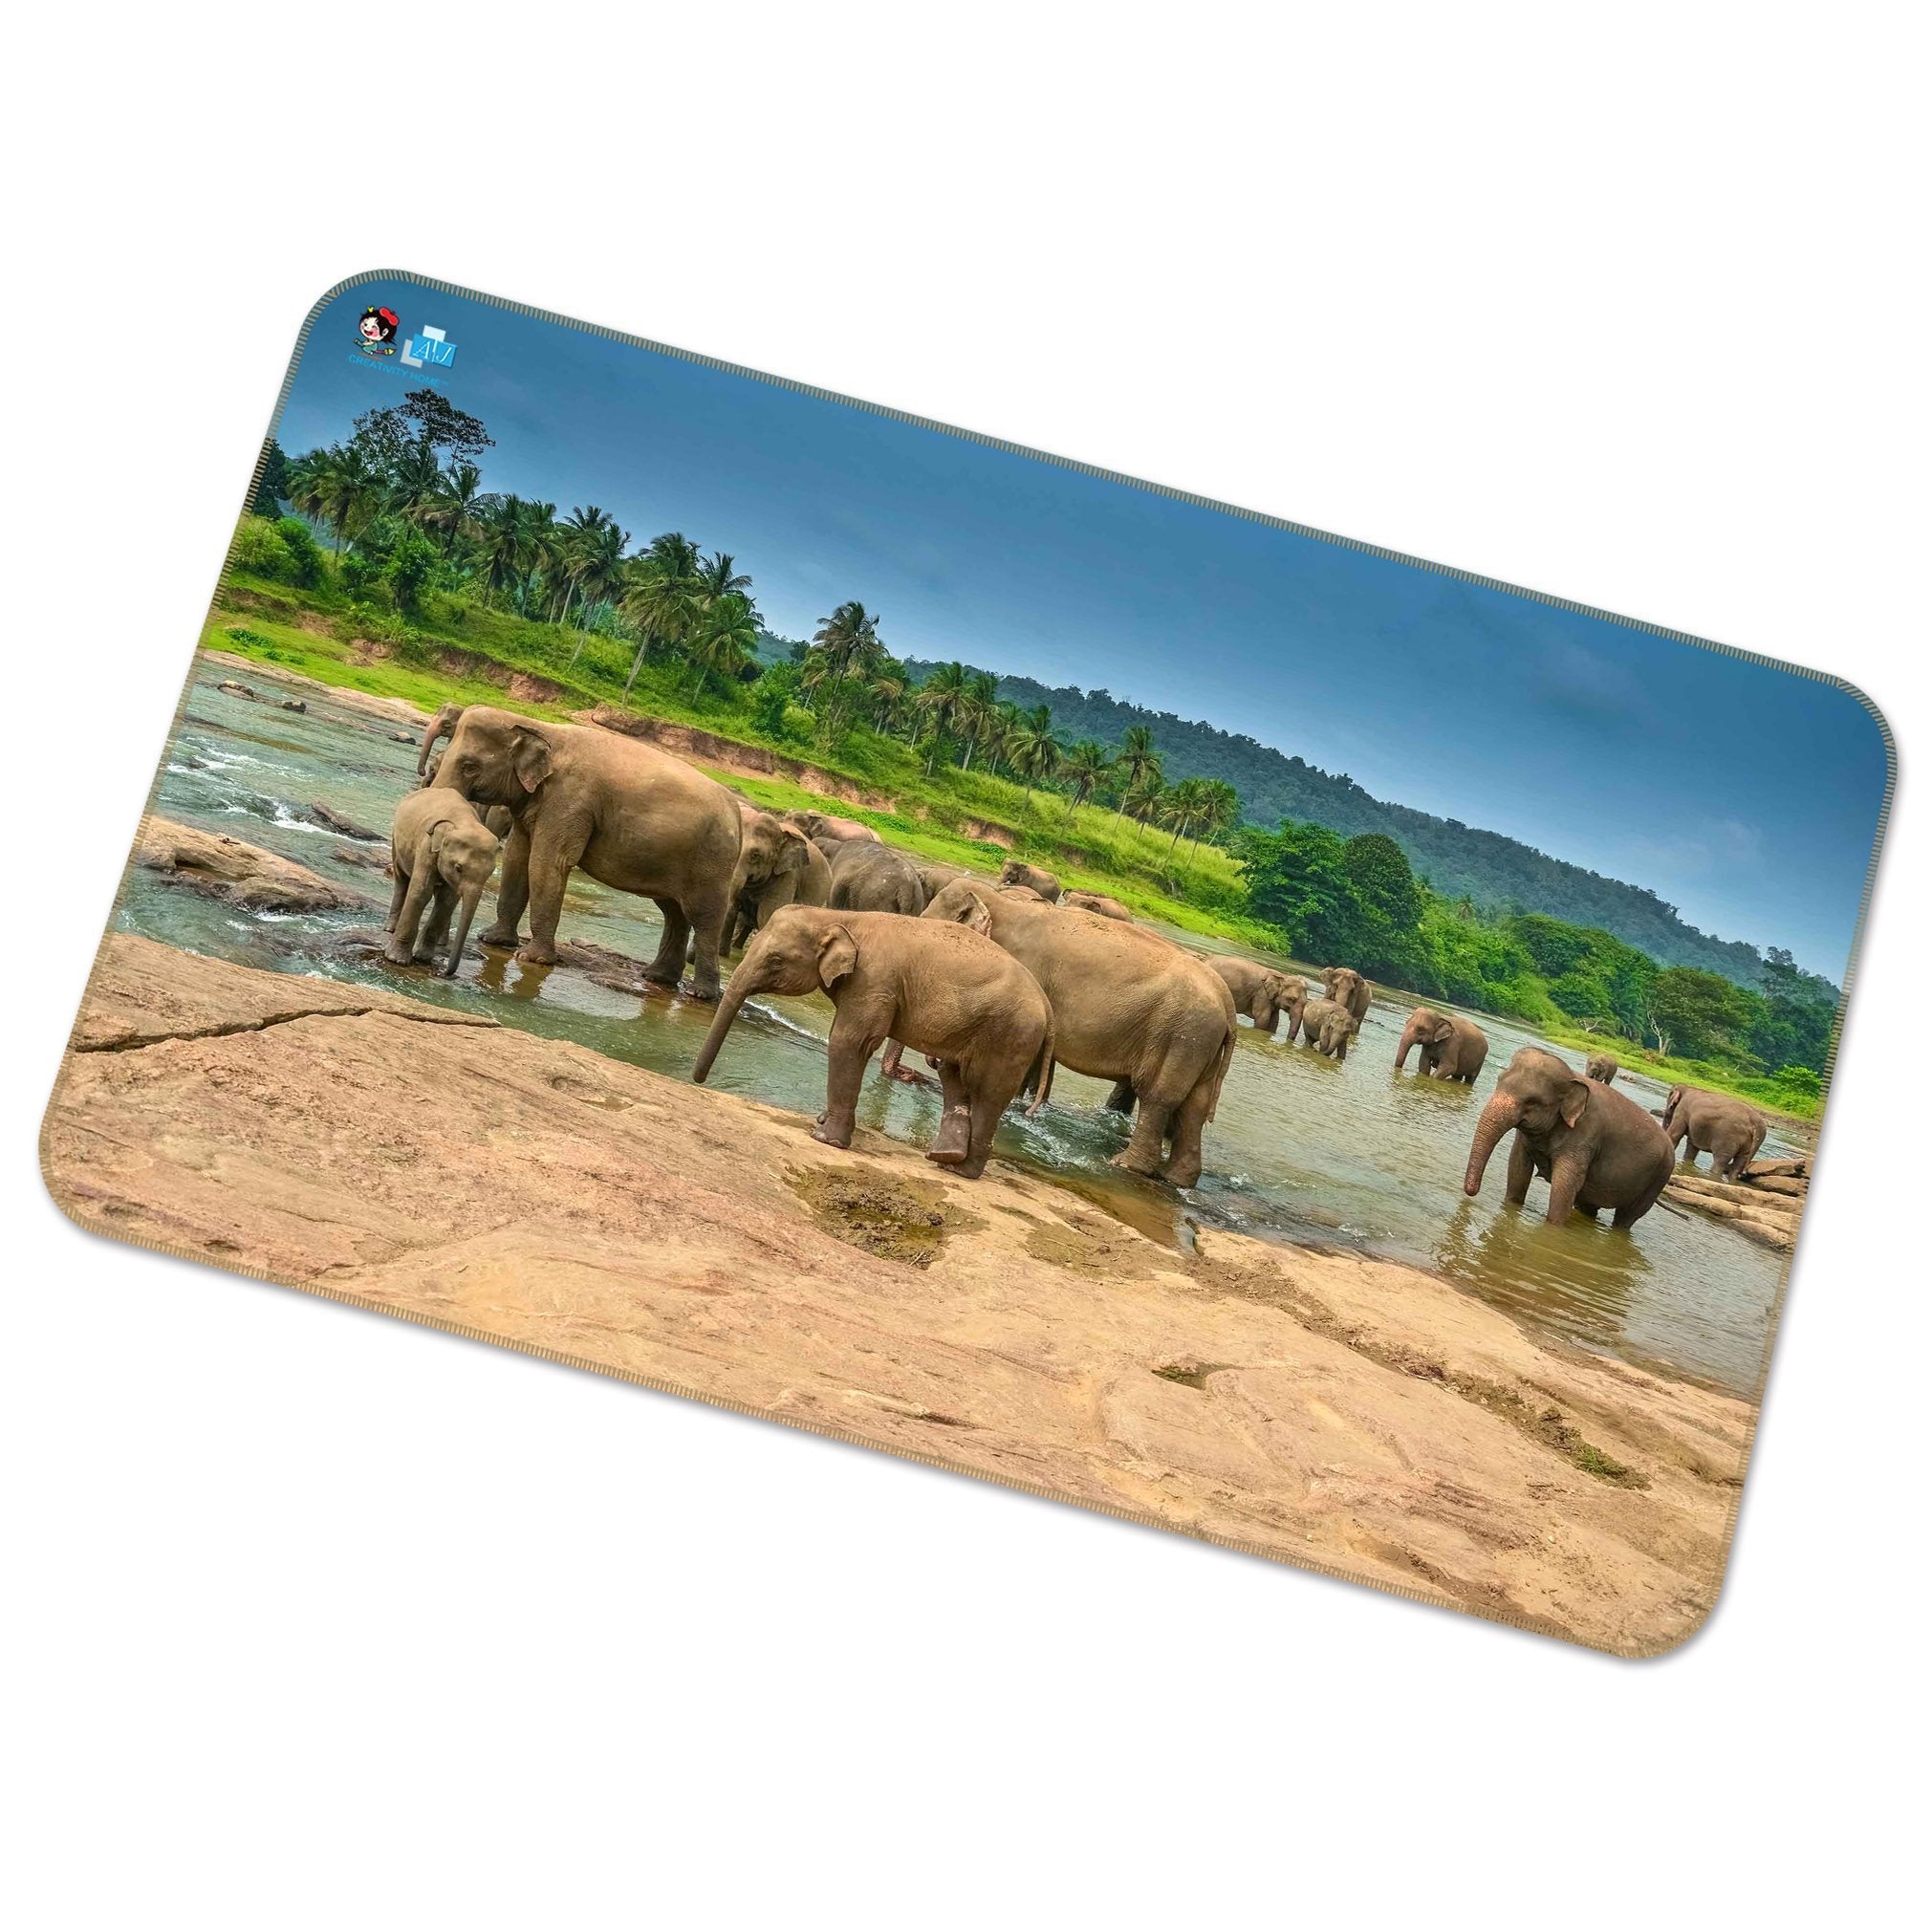 3D River Playful Elephants 280 Non Slip Rug Mat Mat AJ Creativity Home 